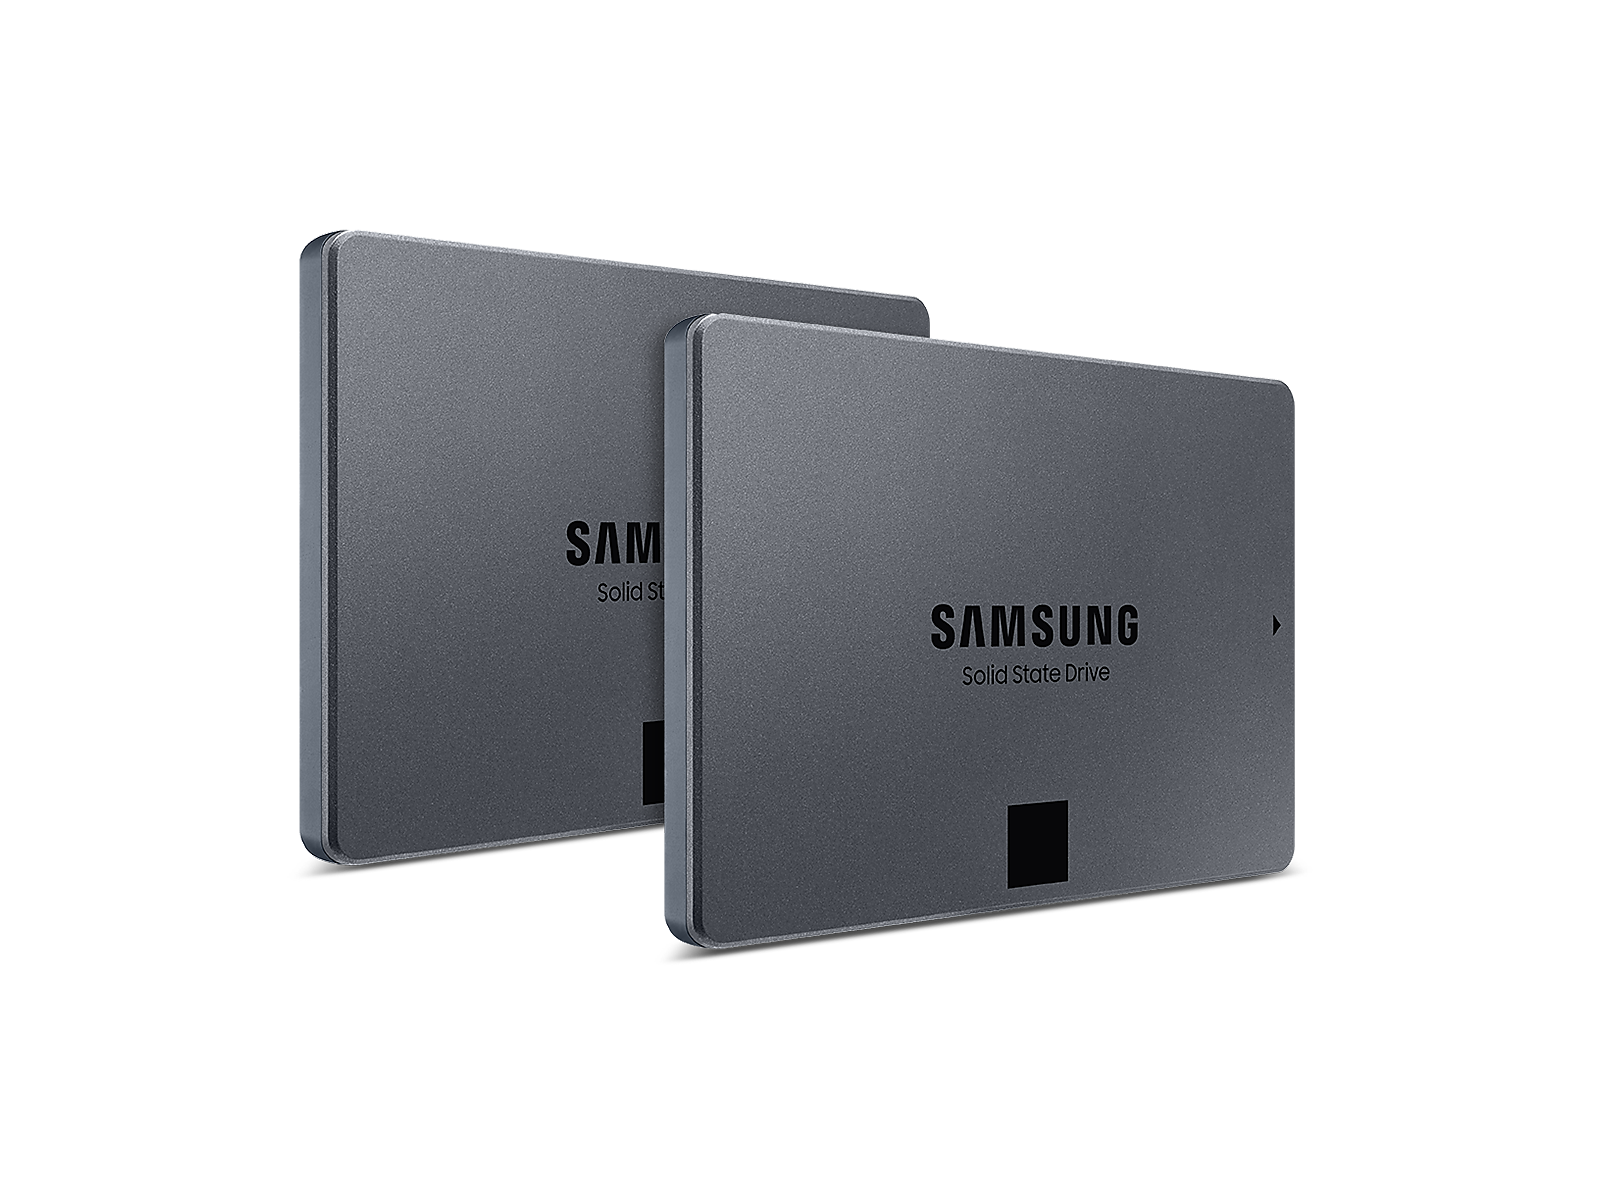 Samsung 870 QVO SATA III 2.5" SSD 8TB - 2 Pack(BNDL-1634757644516)